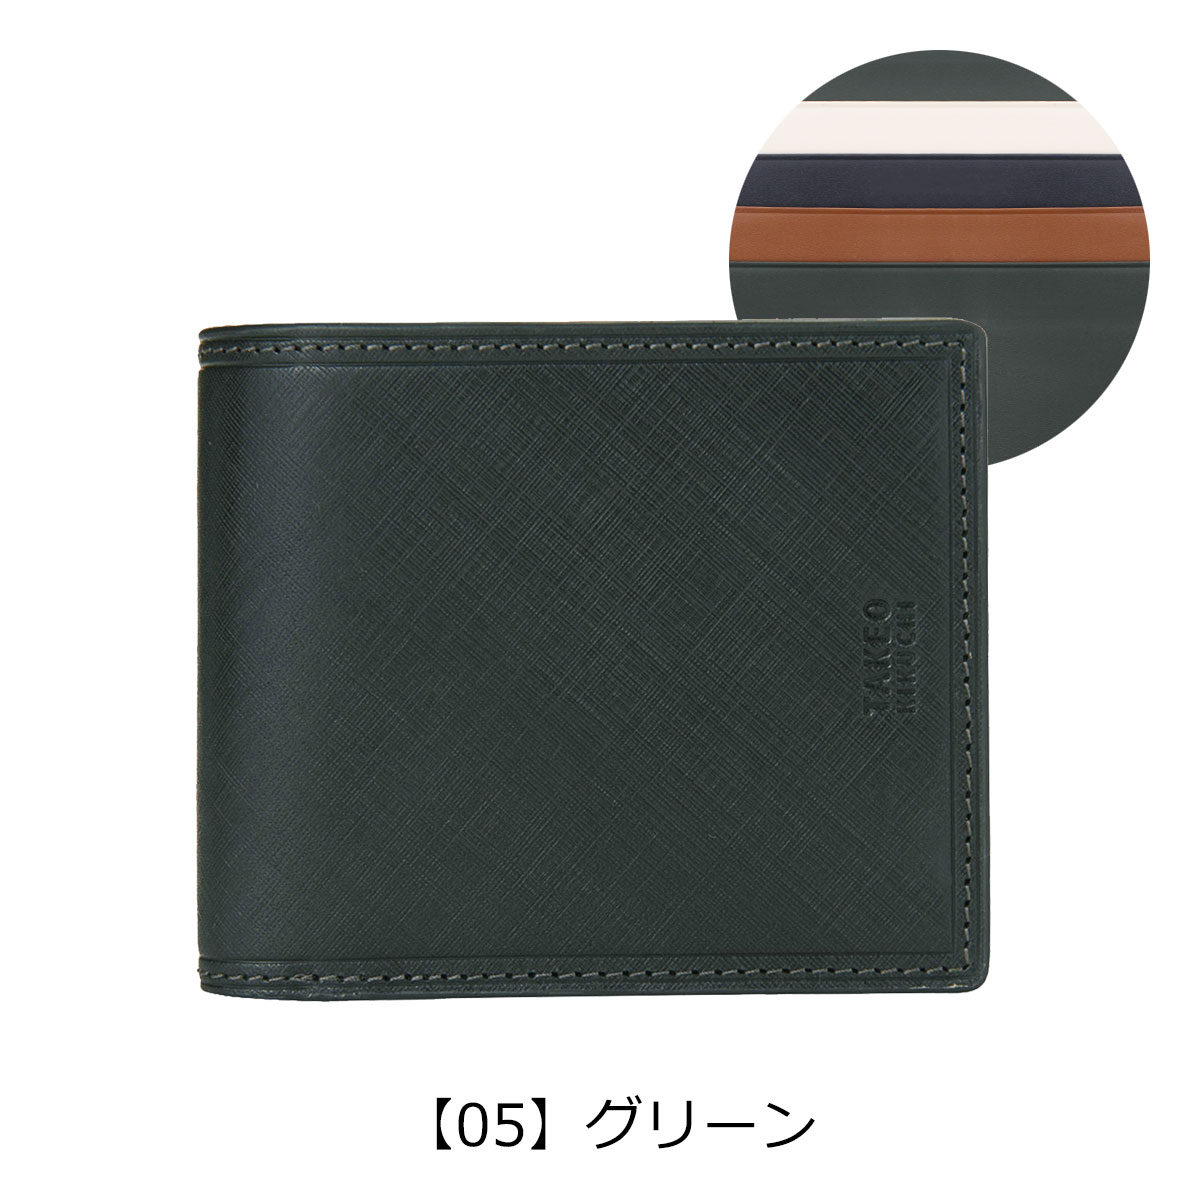 タケオキクチ 二つ折り財布 メンズ 本革 シグマ 727626 TAKEO KIKUCHI 